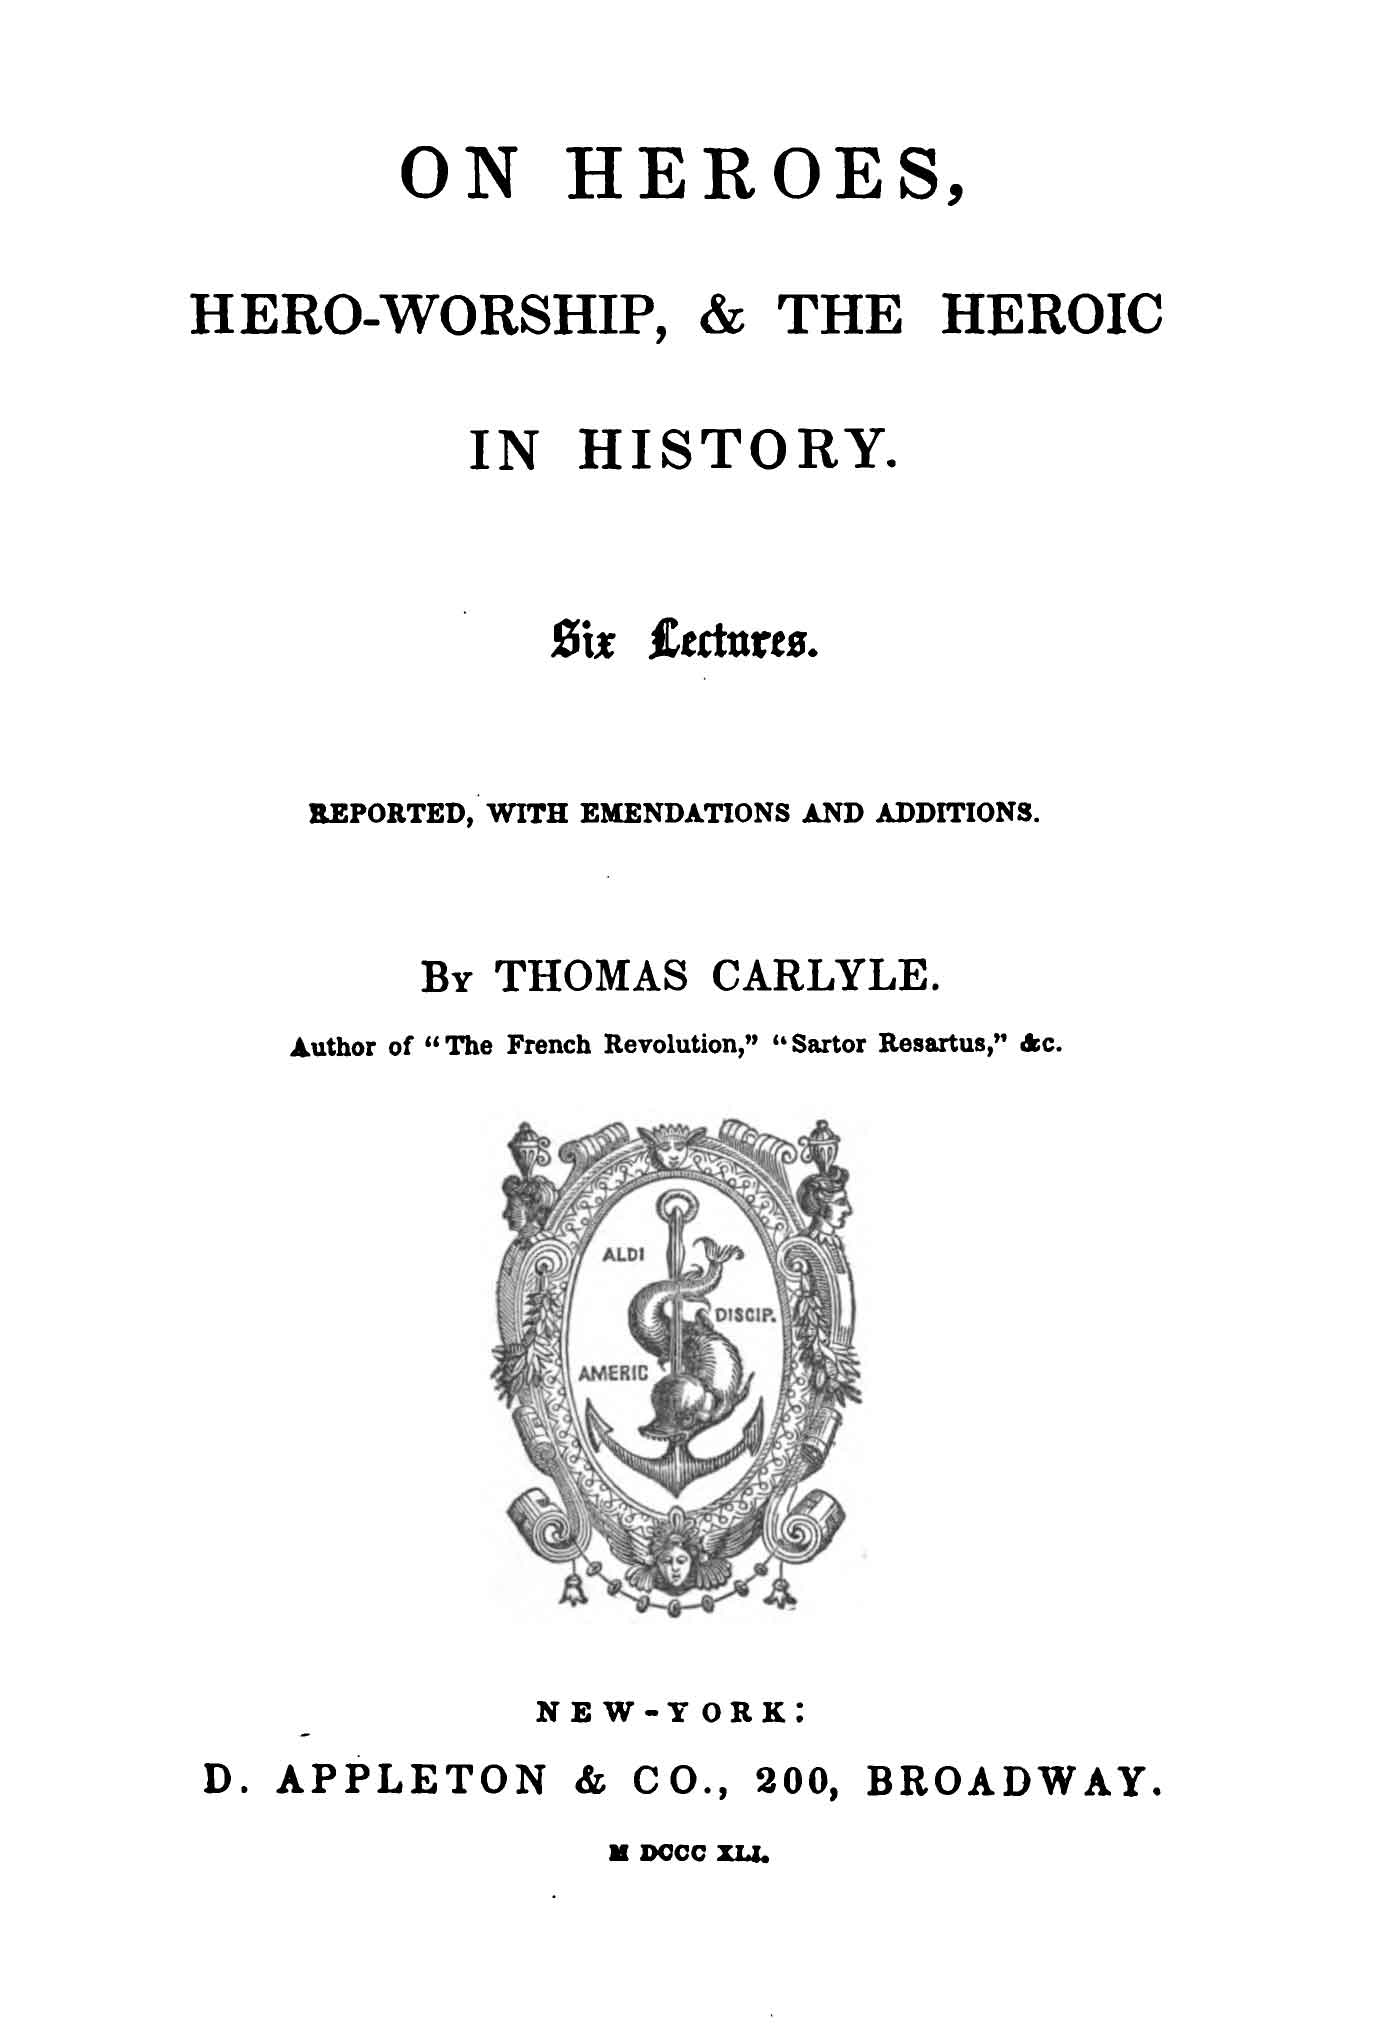 تصویر اولین چاپ کتاب کارلایل